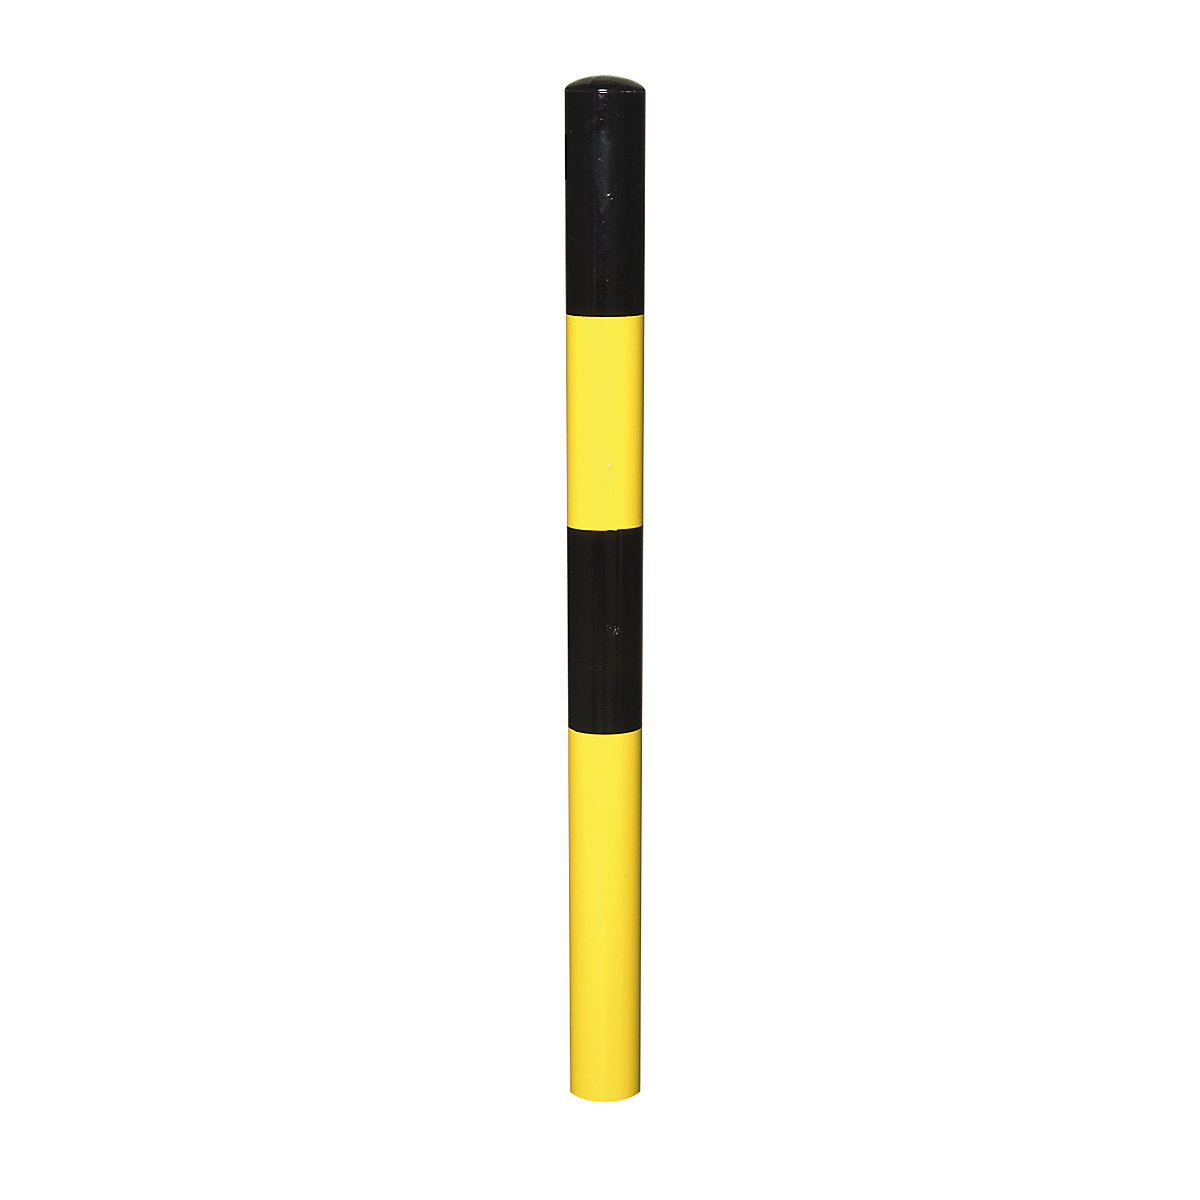 Stup za ograđivanje, za betoniranje, Ø 76 mm, lakiranje u crno-žutoj boji, 2 ušice-9